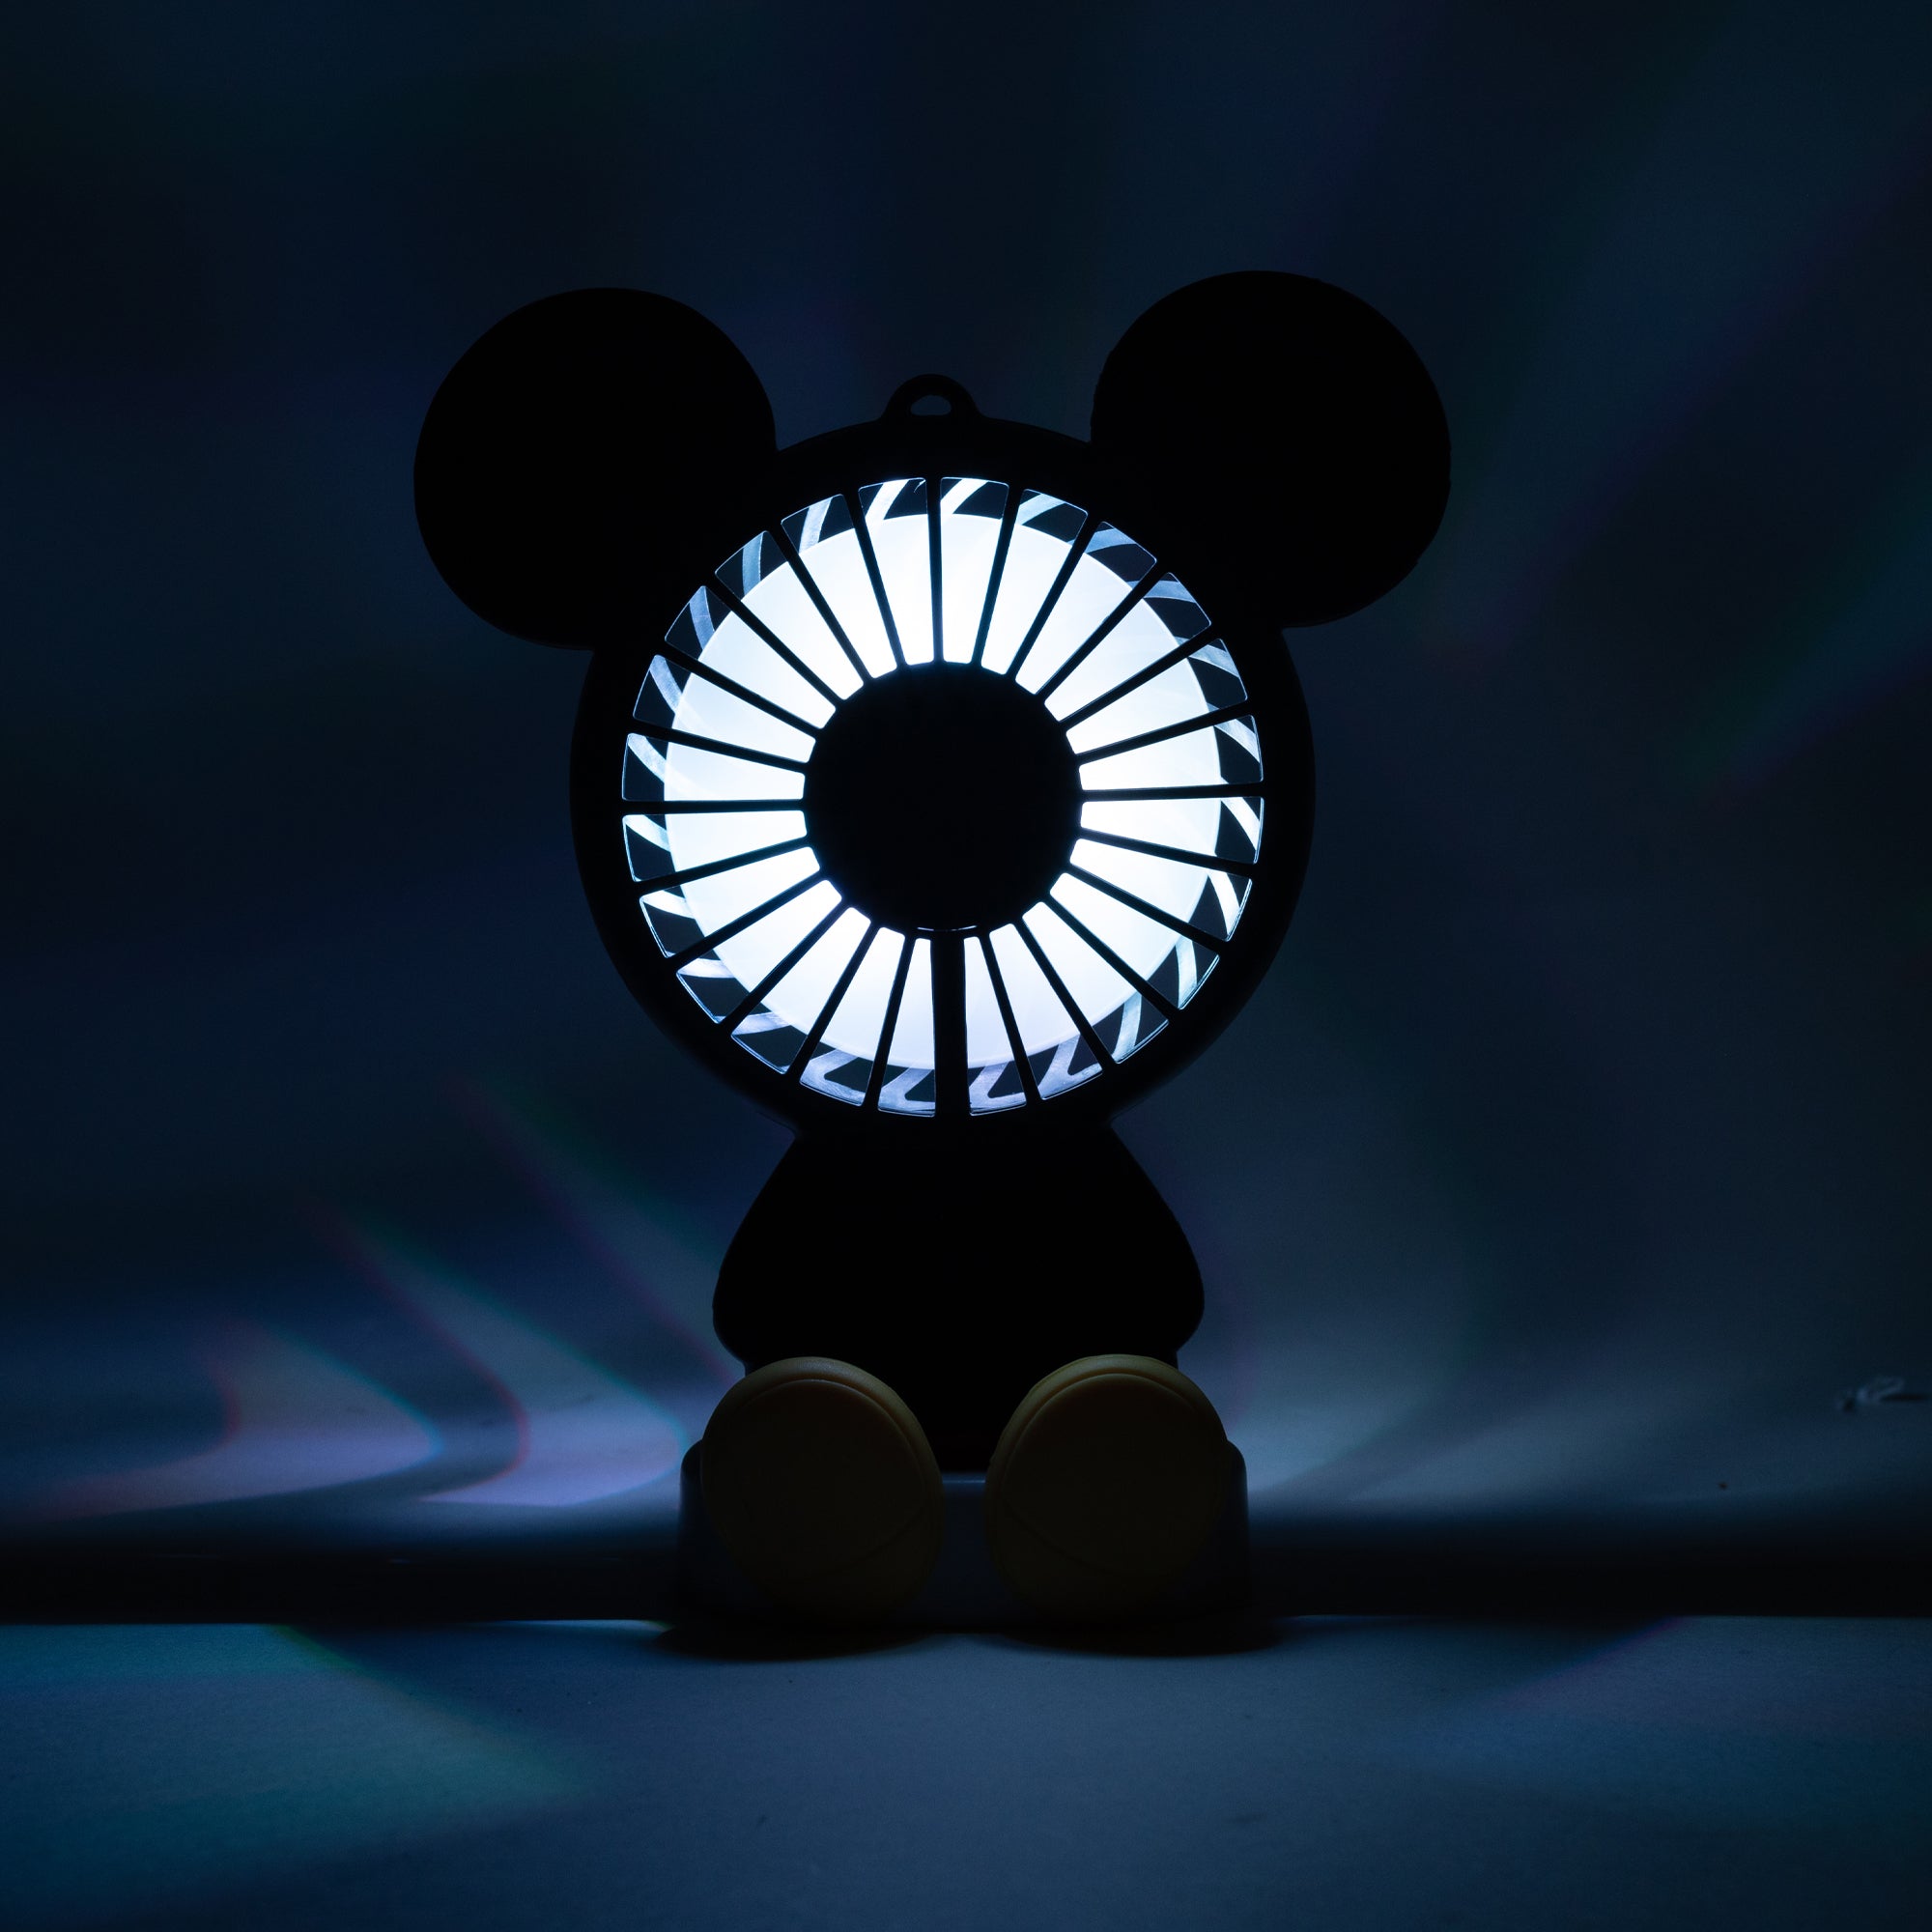 Disney Wireless Mickey Mouse Fan w/ LED Lights - 3 speed fan setting with lanyard accessories